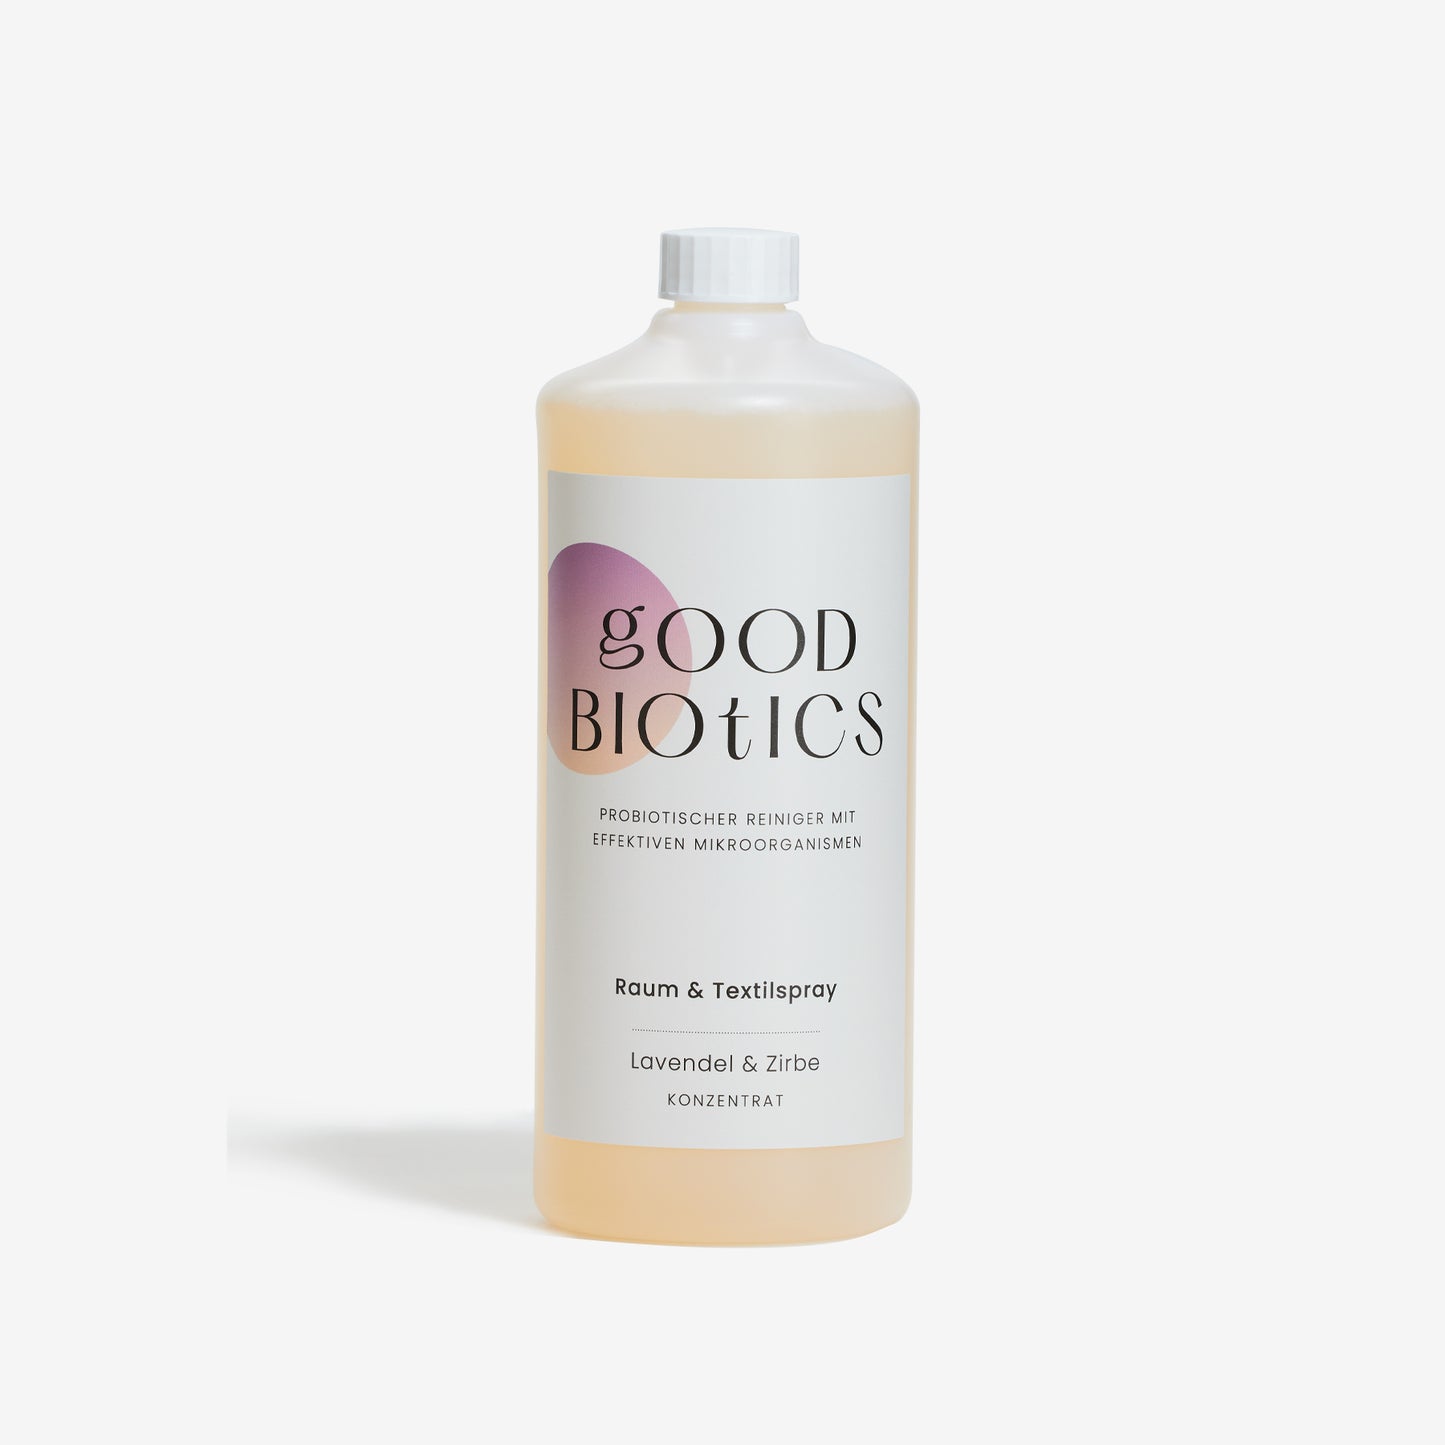 Probiotisches Reinigungskonzentrat Raum & Textilspray